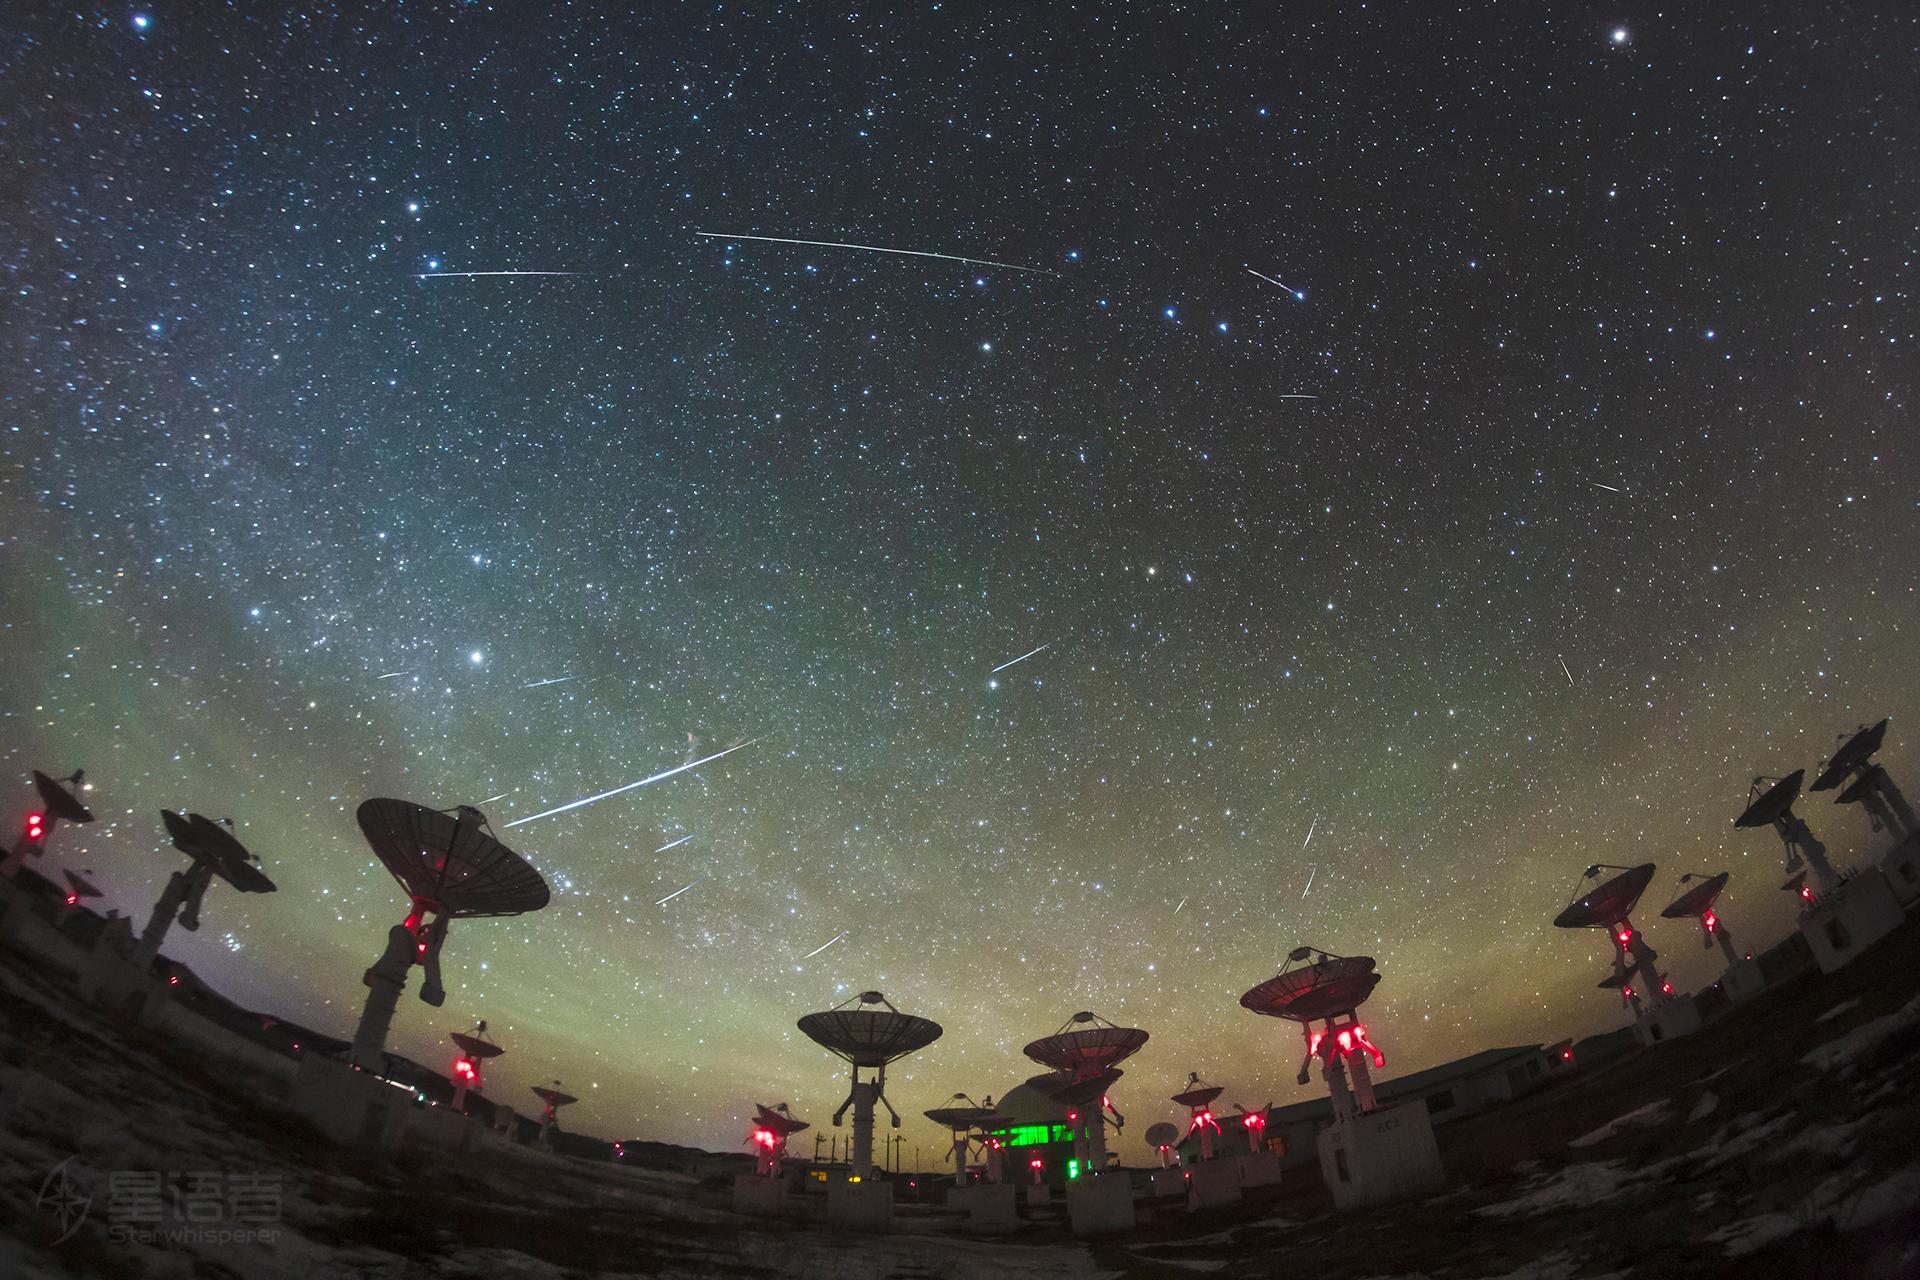 مصفوفة من صحون التلسكوبات الموجّهة نحو الأعلى وفوقها السماء المرصّعة بالنجوم يخطّ فيها عدد من الشهب